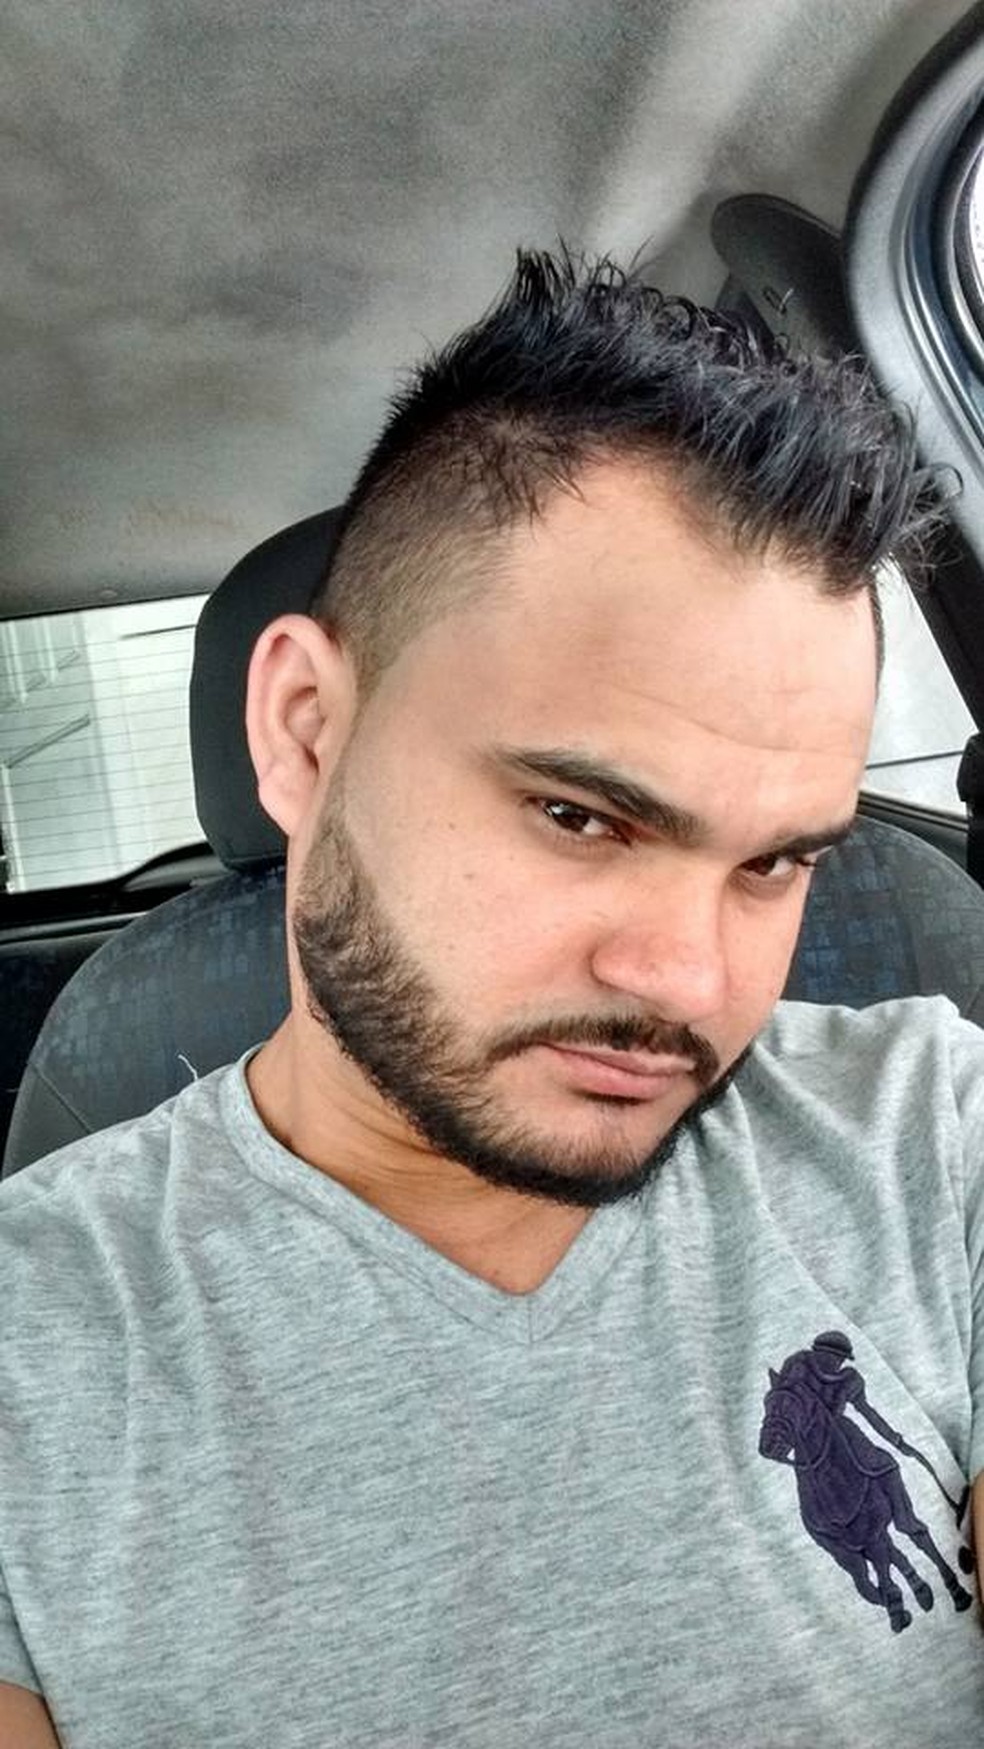 'Ele não precisava disso', diz irmão de homem baleado e morto após briga por marmita, na Grande SP — Foto: Redes sociais / Facebook